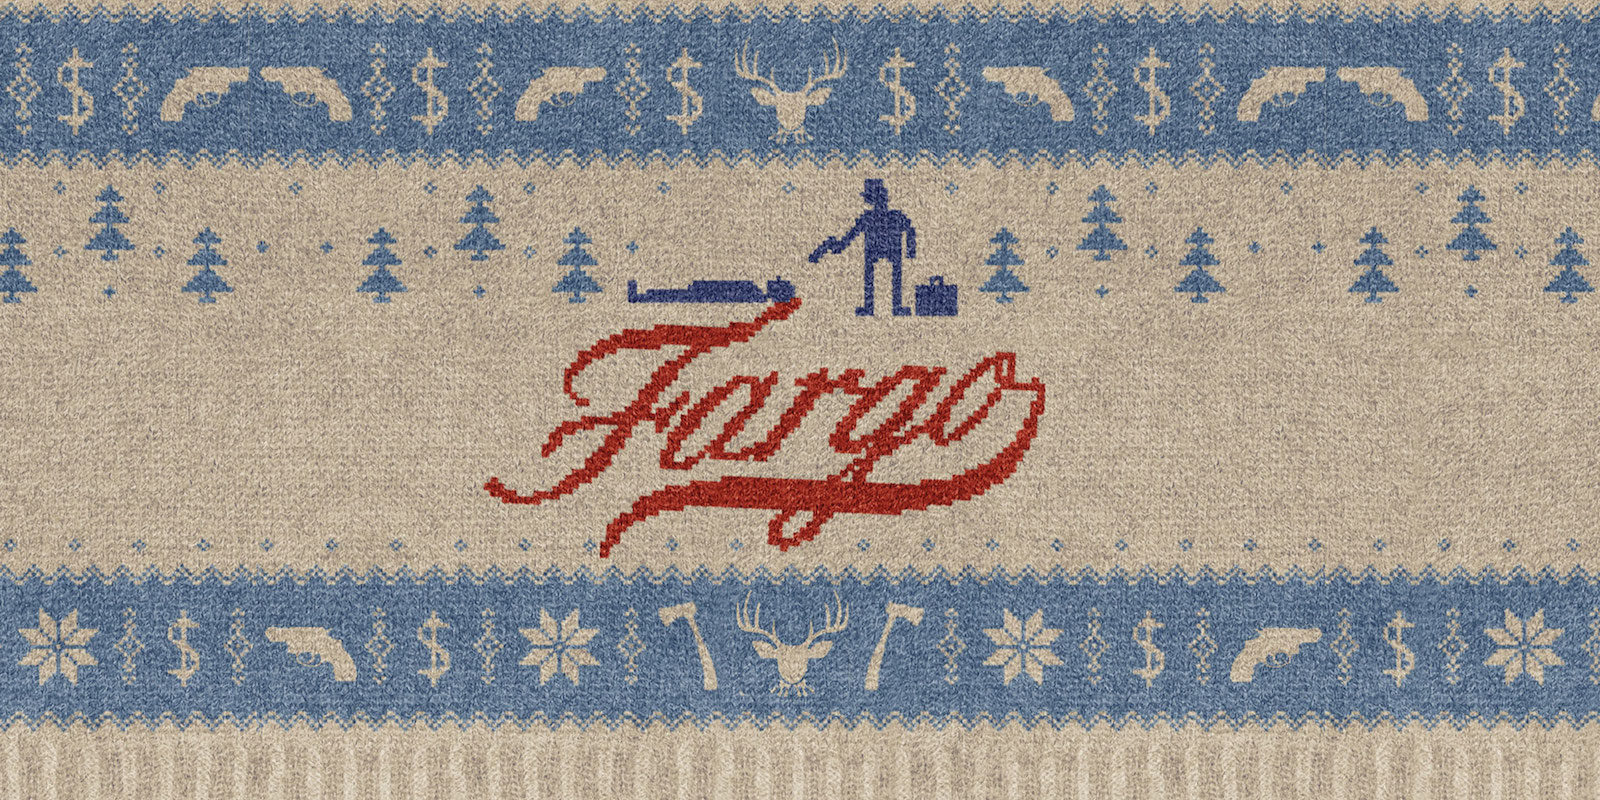 David Thewlis aparecerá en la tercera temporada de 'Fargo'